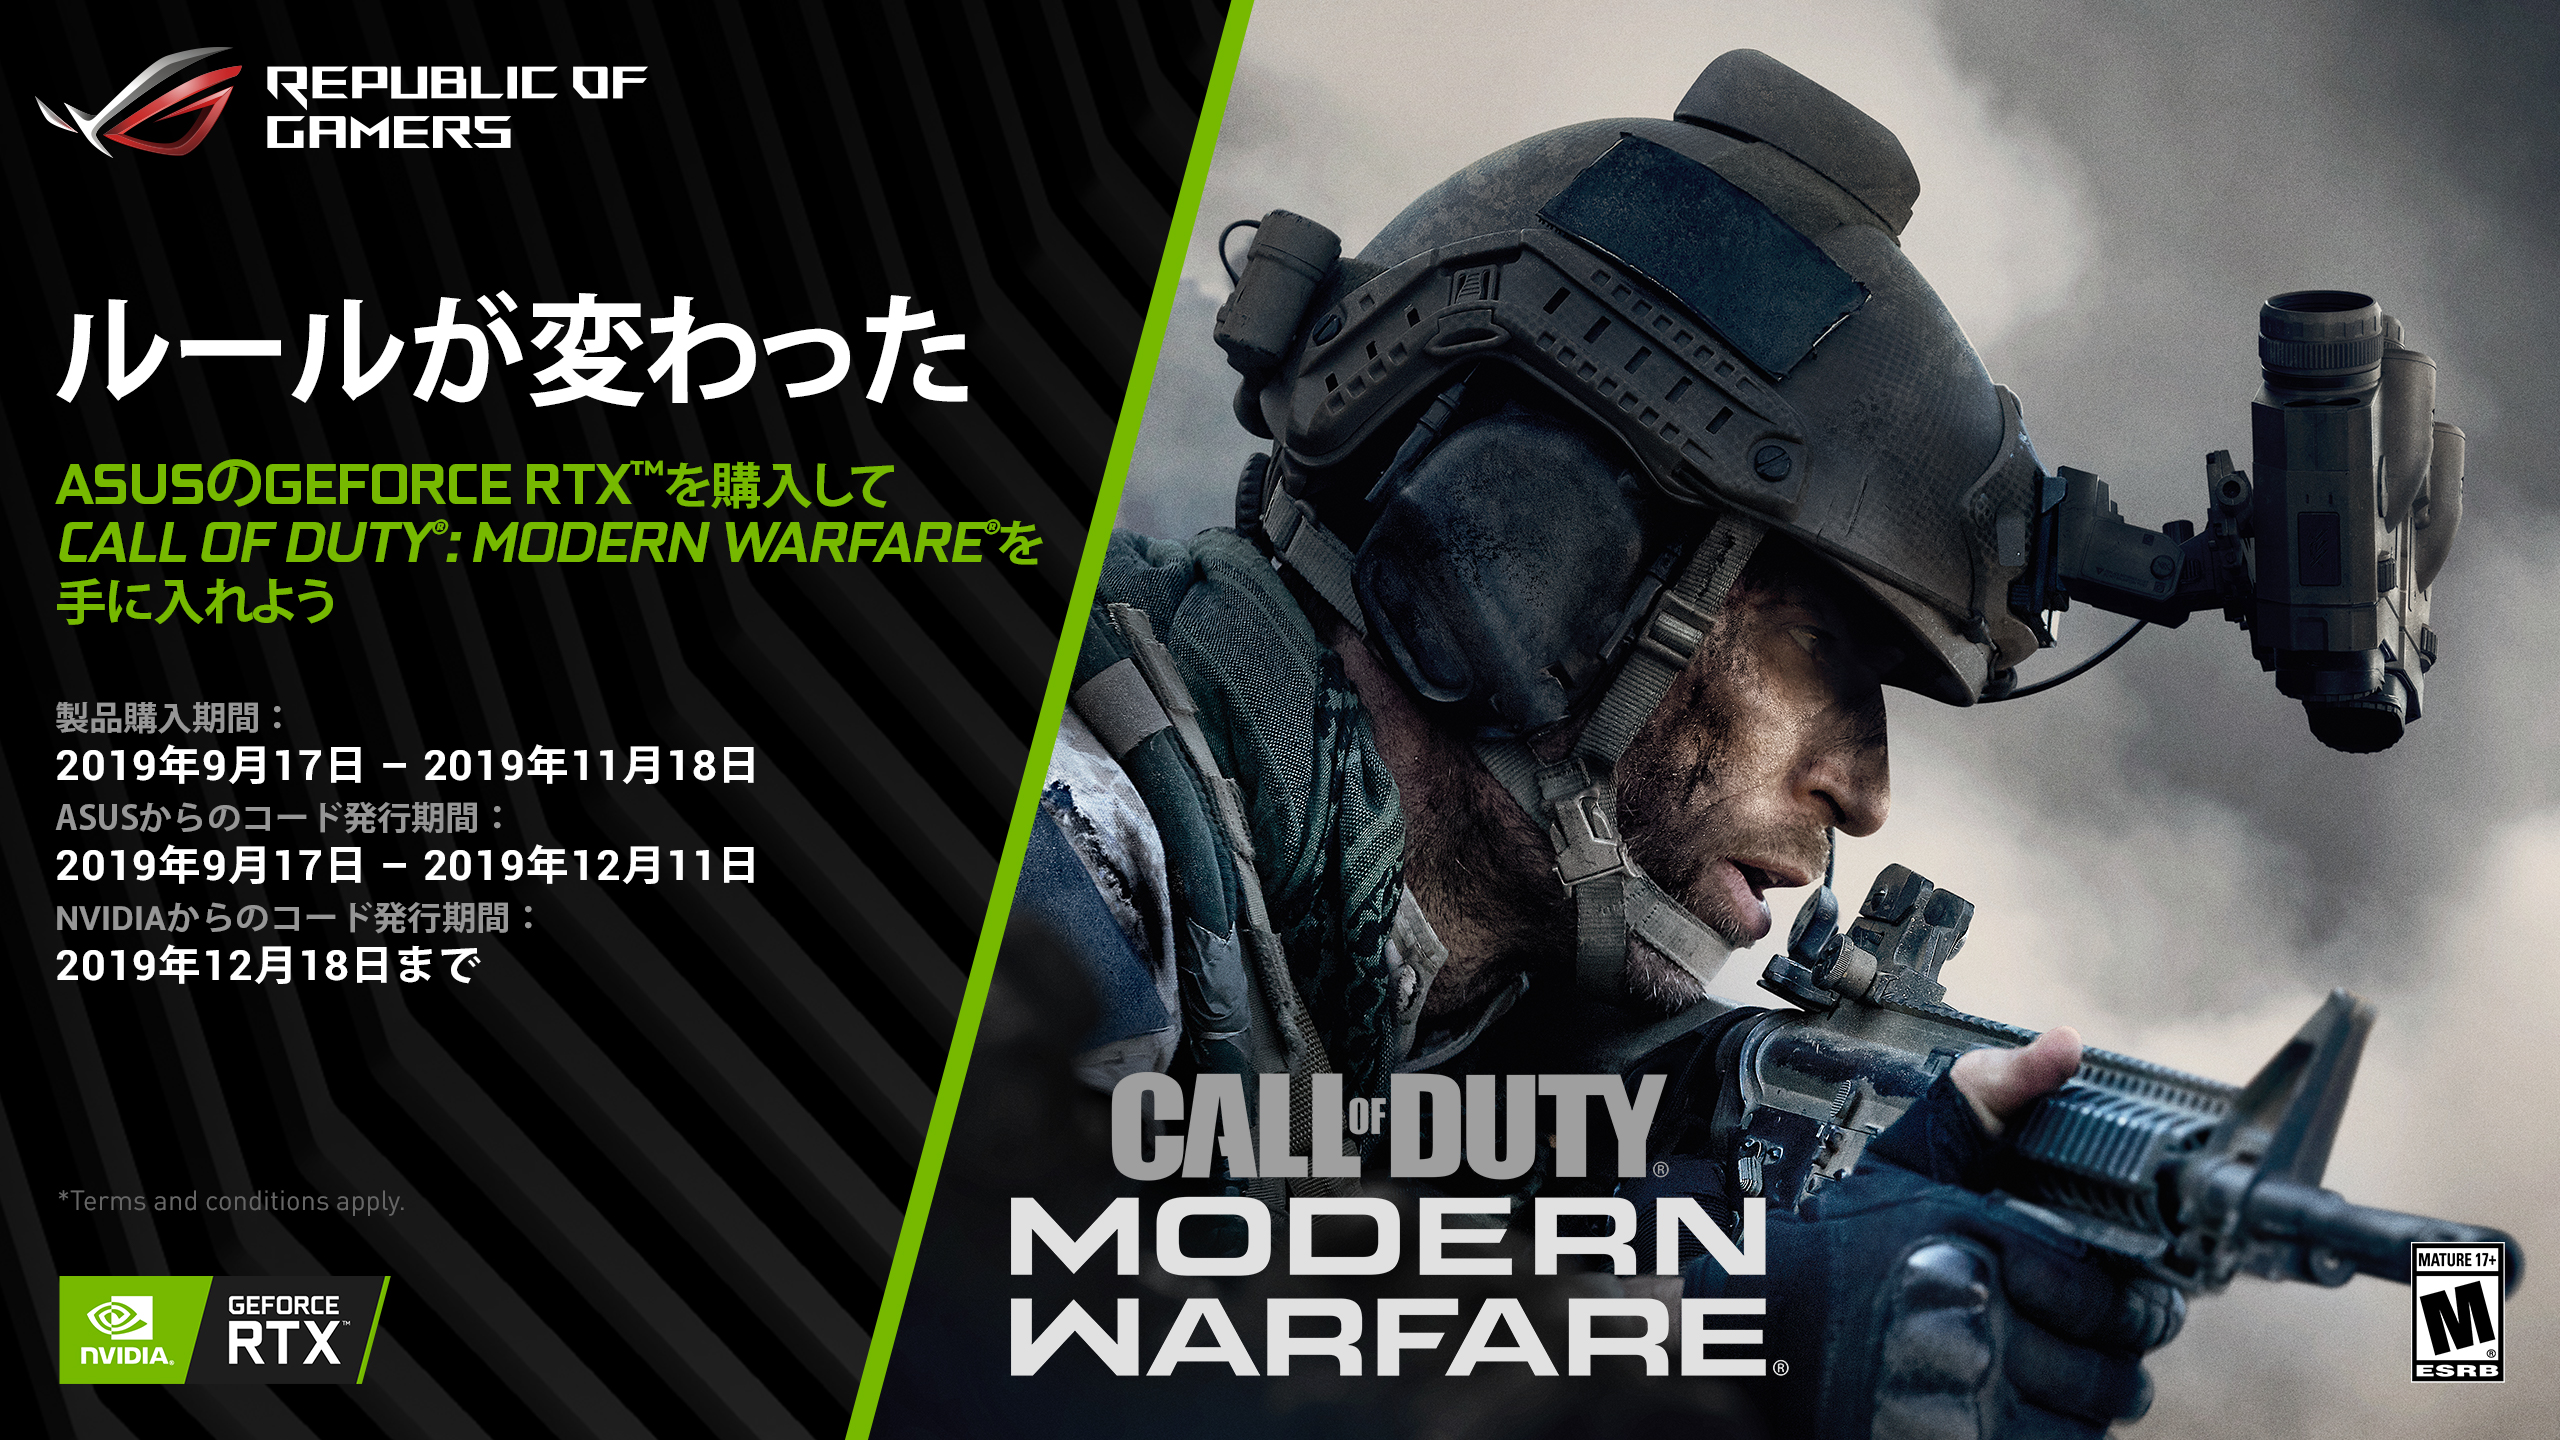 Asusのgeforce Rtx シリーズgpu搭載製品の購入で Call Of Duty Modern Warfare のゲームコードがもらえるバンドルキャンペーン応募ページを公開 Asus Japan株式会社のプレスリリース